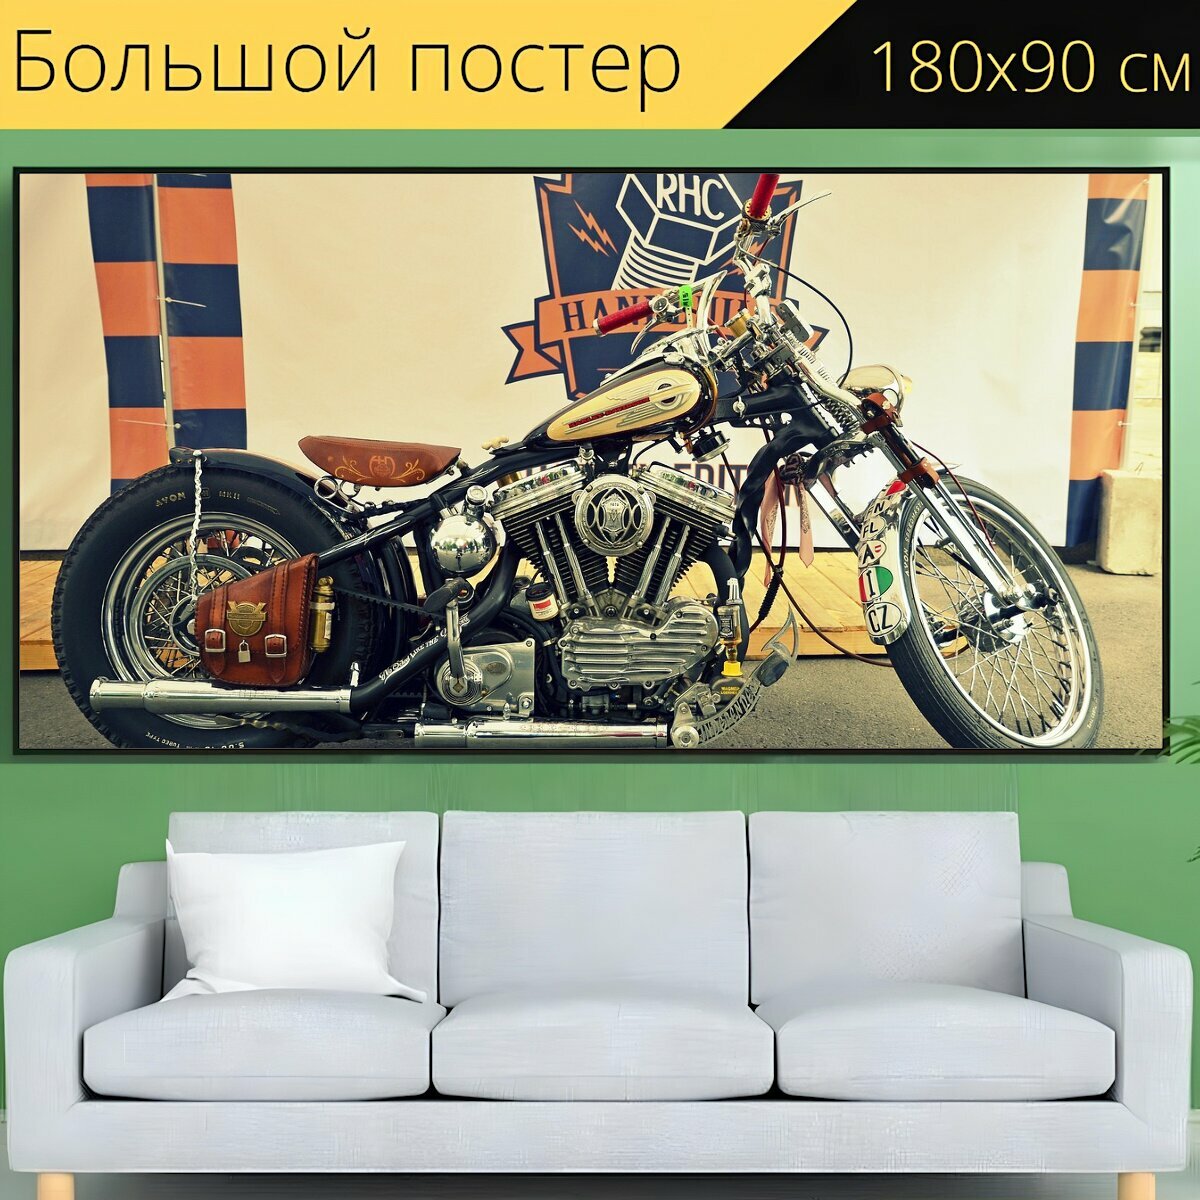 Большой постер "Мото, мотоцикл, ретро" 180 x 90 см. для интерьера